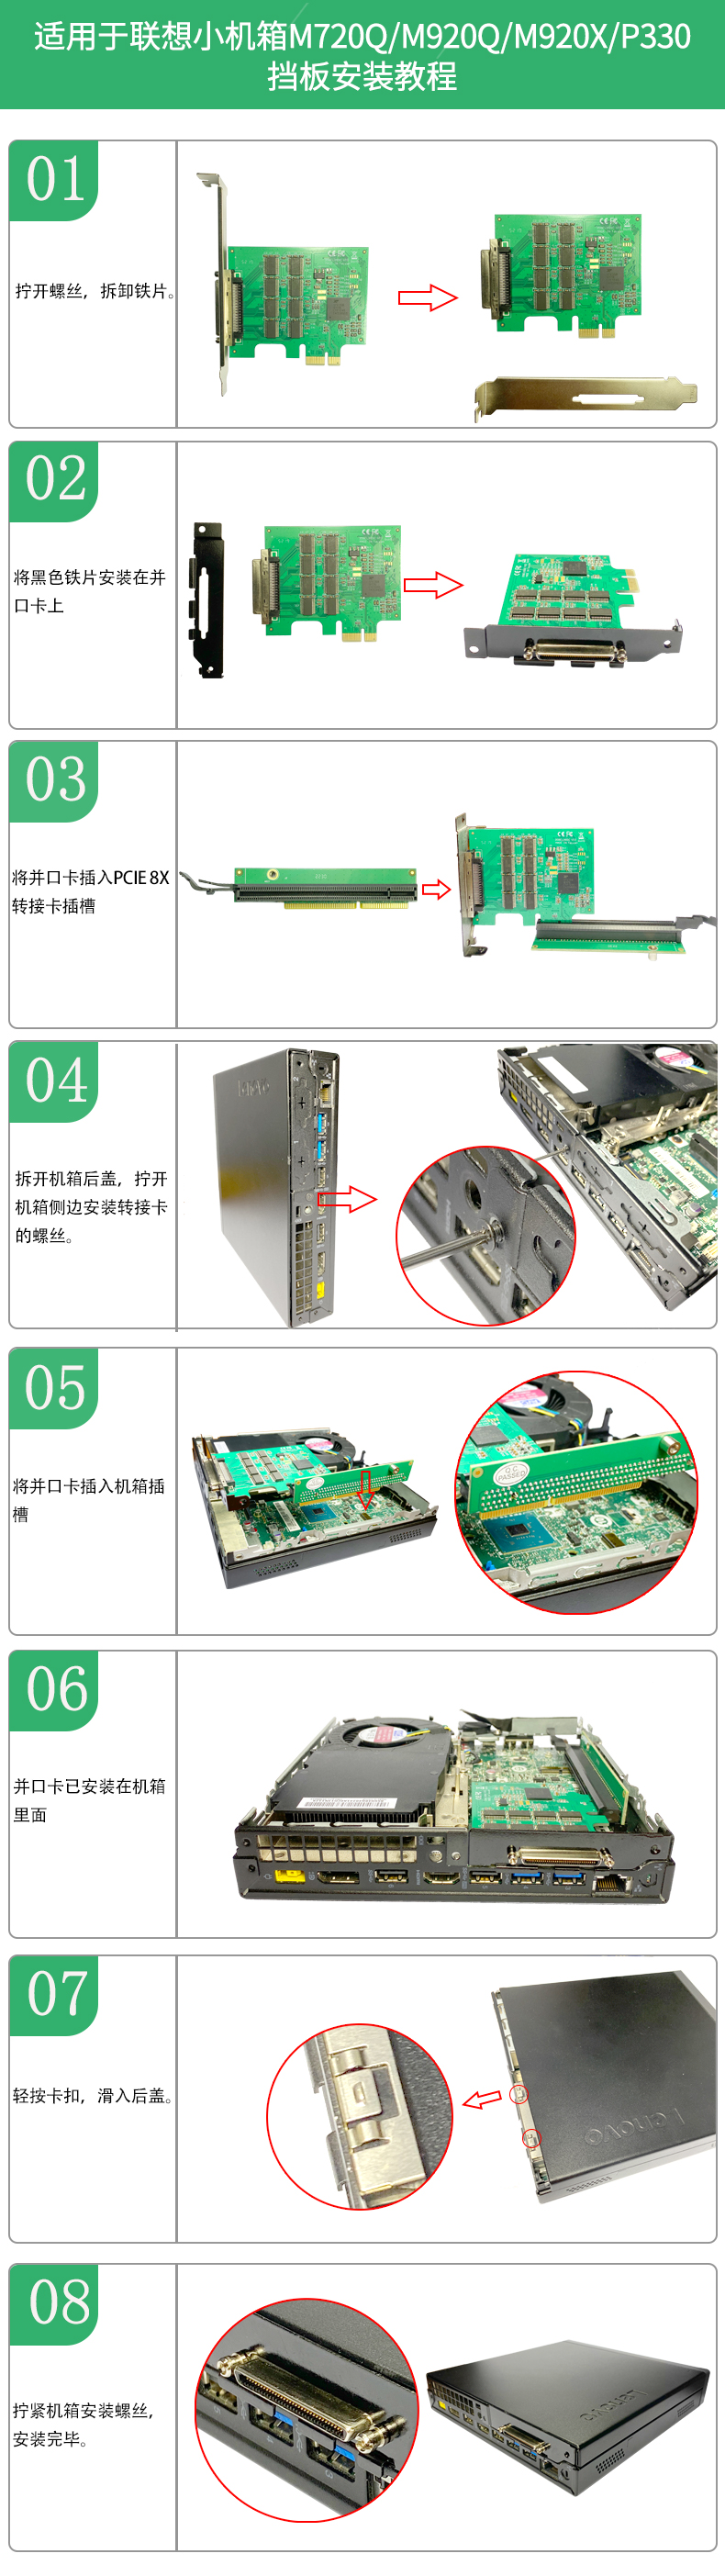 IO-PCETFEE-8S短铁片安装教程详情图中文.jpg